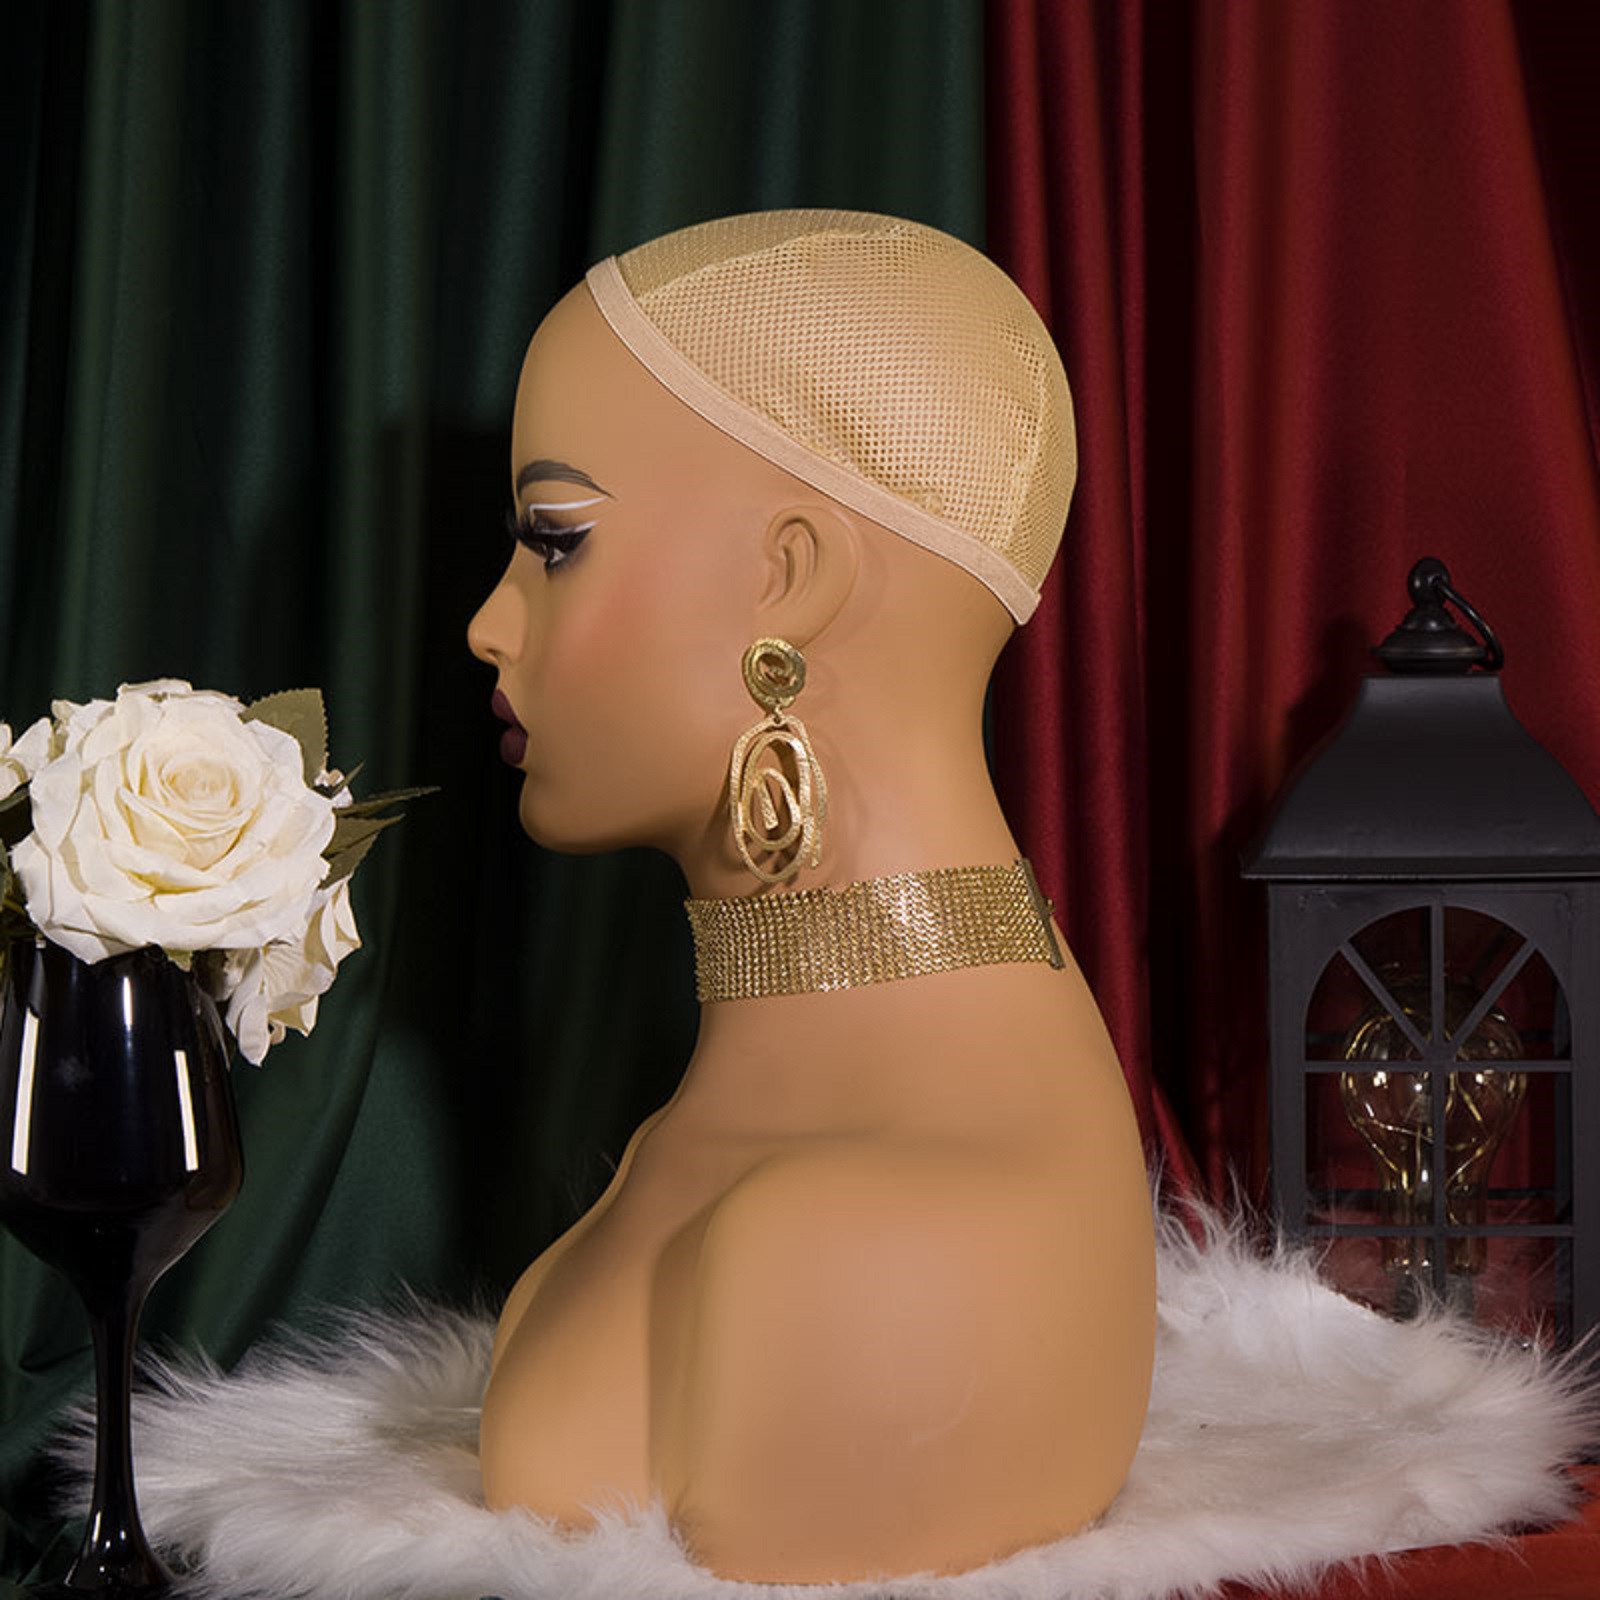 Wig Head Mannequin